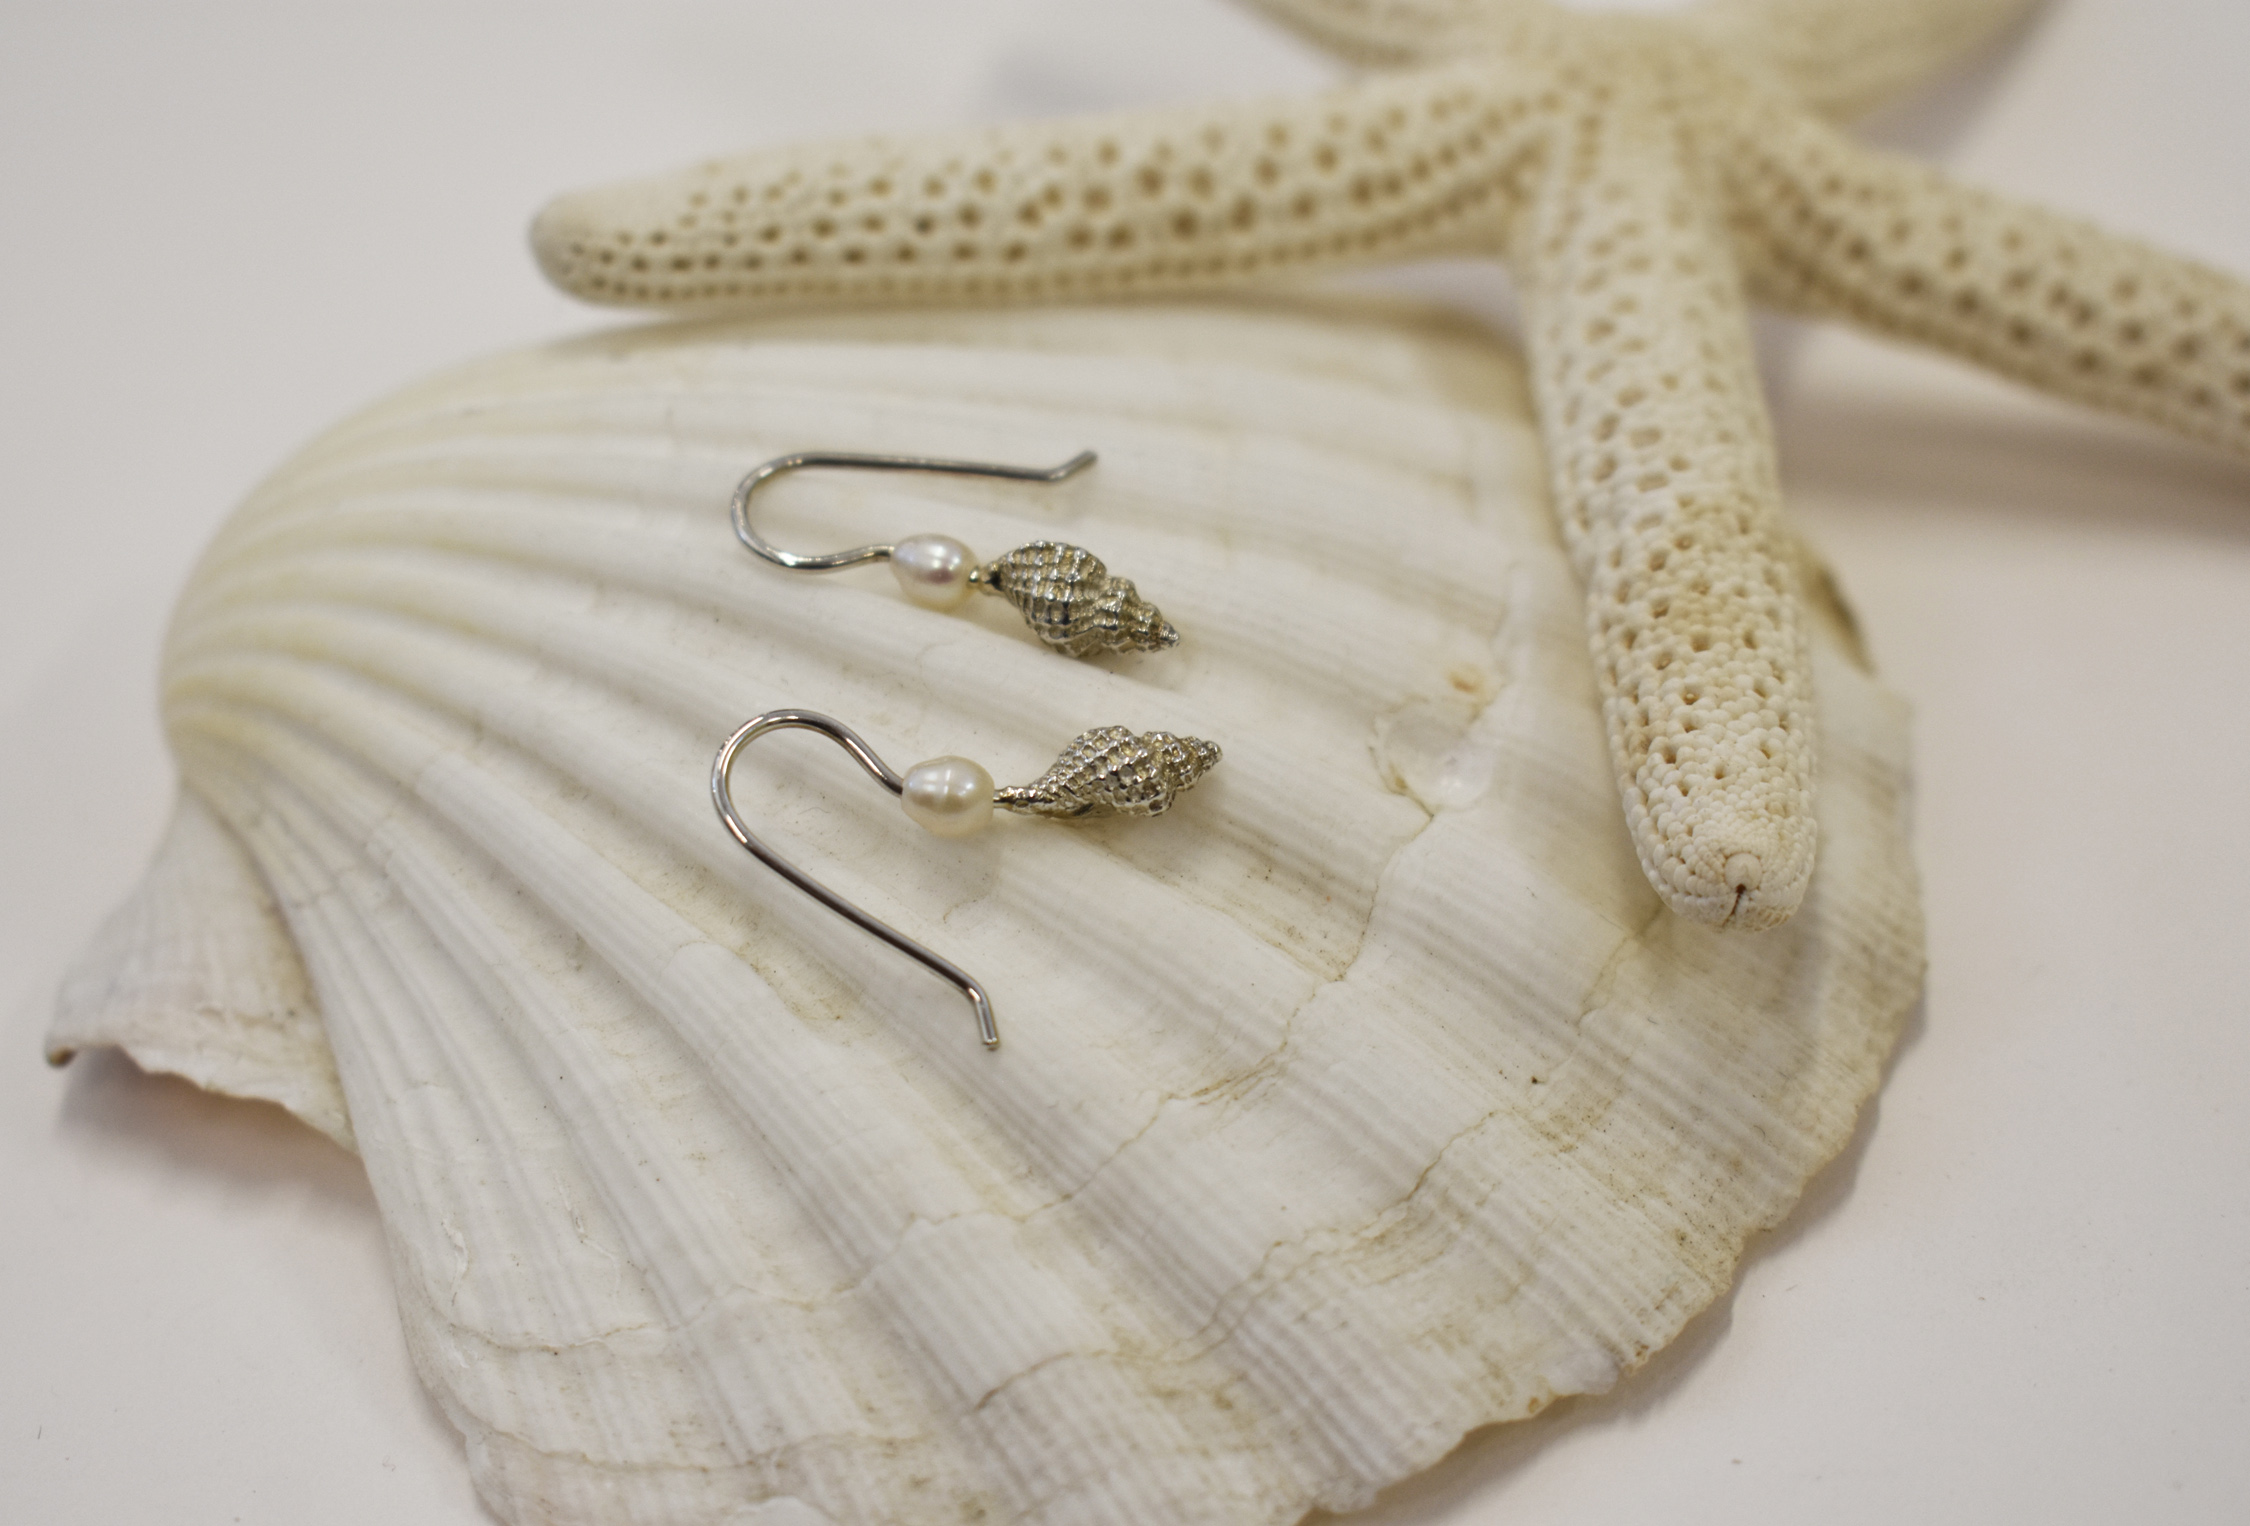 Baby conch p earrings 1 k